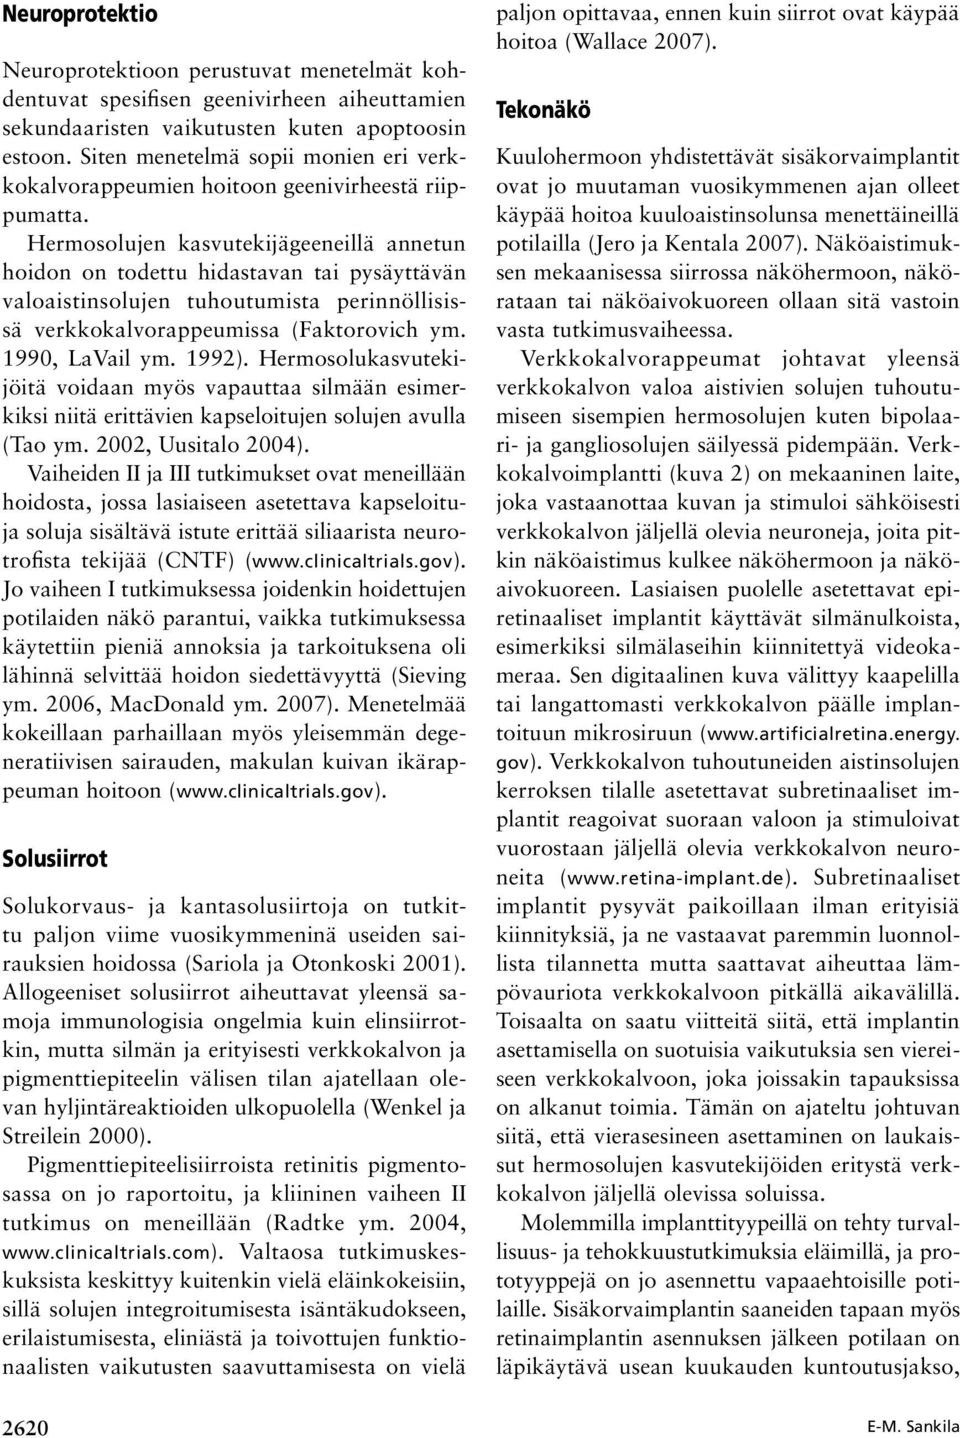 Hermosolujen kasvutekijägeeneillä annetun hoidon on todettu hidastavan tai pysäyttävän valoaistinsolujen tuhoutumista perinnöllisissä verkkokalvorappeumissa (Faktorovich ym. 1990, LaVail ym. 1992).